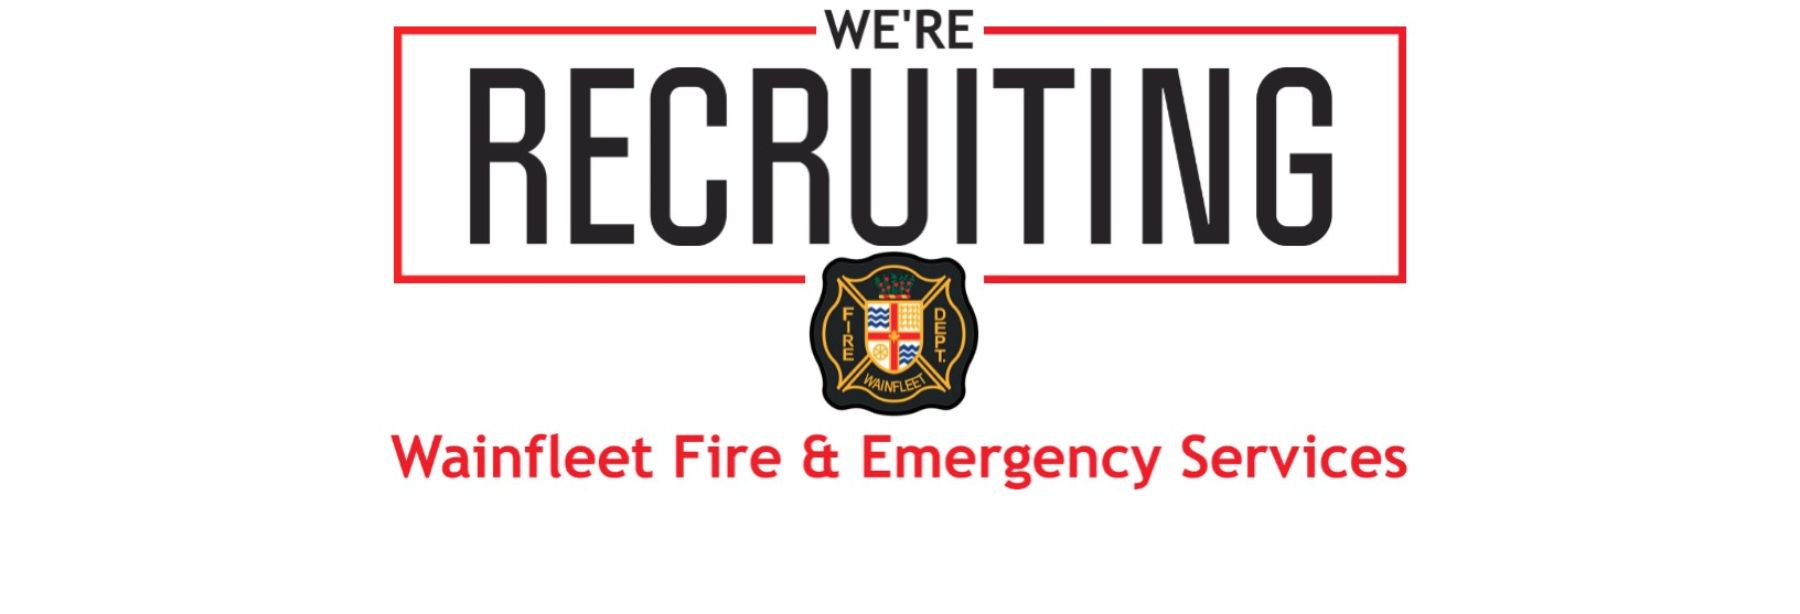 Wainfleet Fire is Recruiting Volunteers